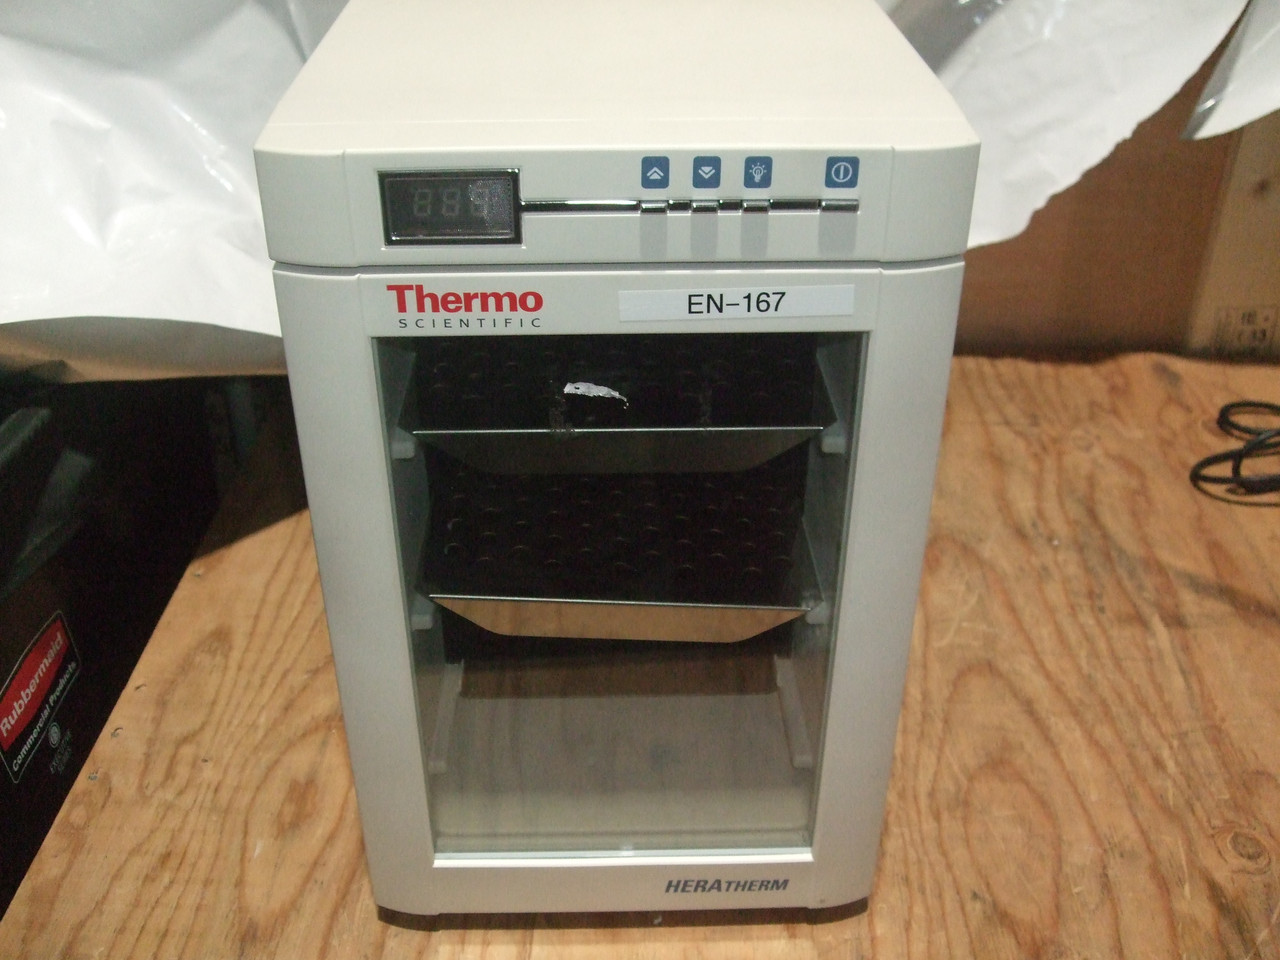 Thermo Scientific Heratherm IMC 18 Incubator - EURO Cord